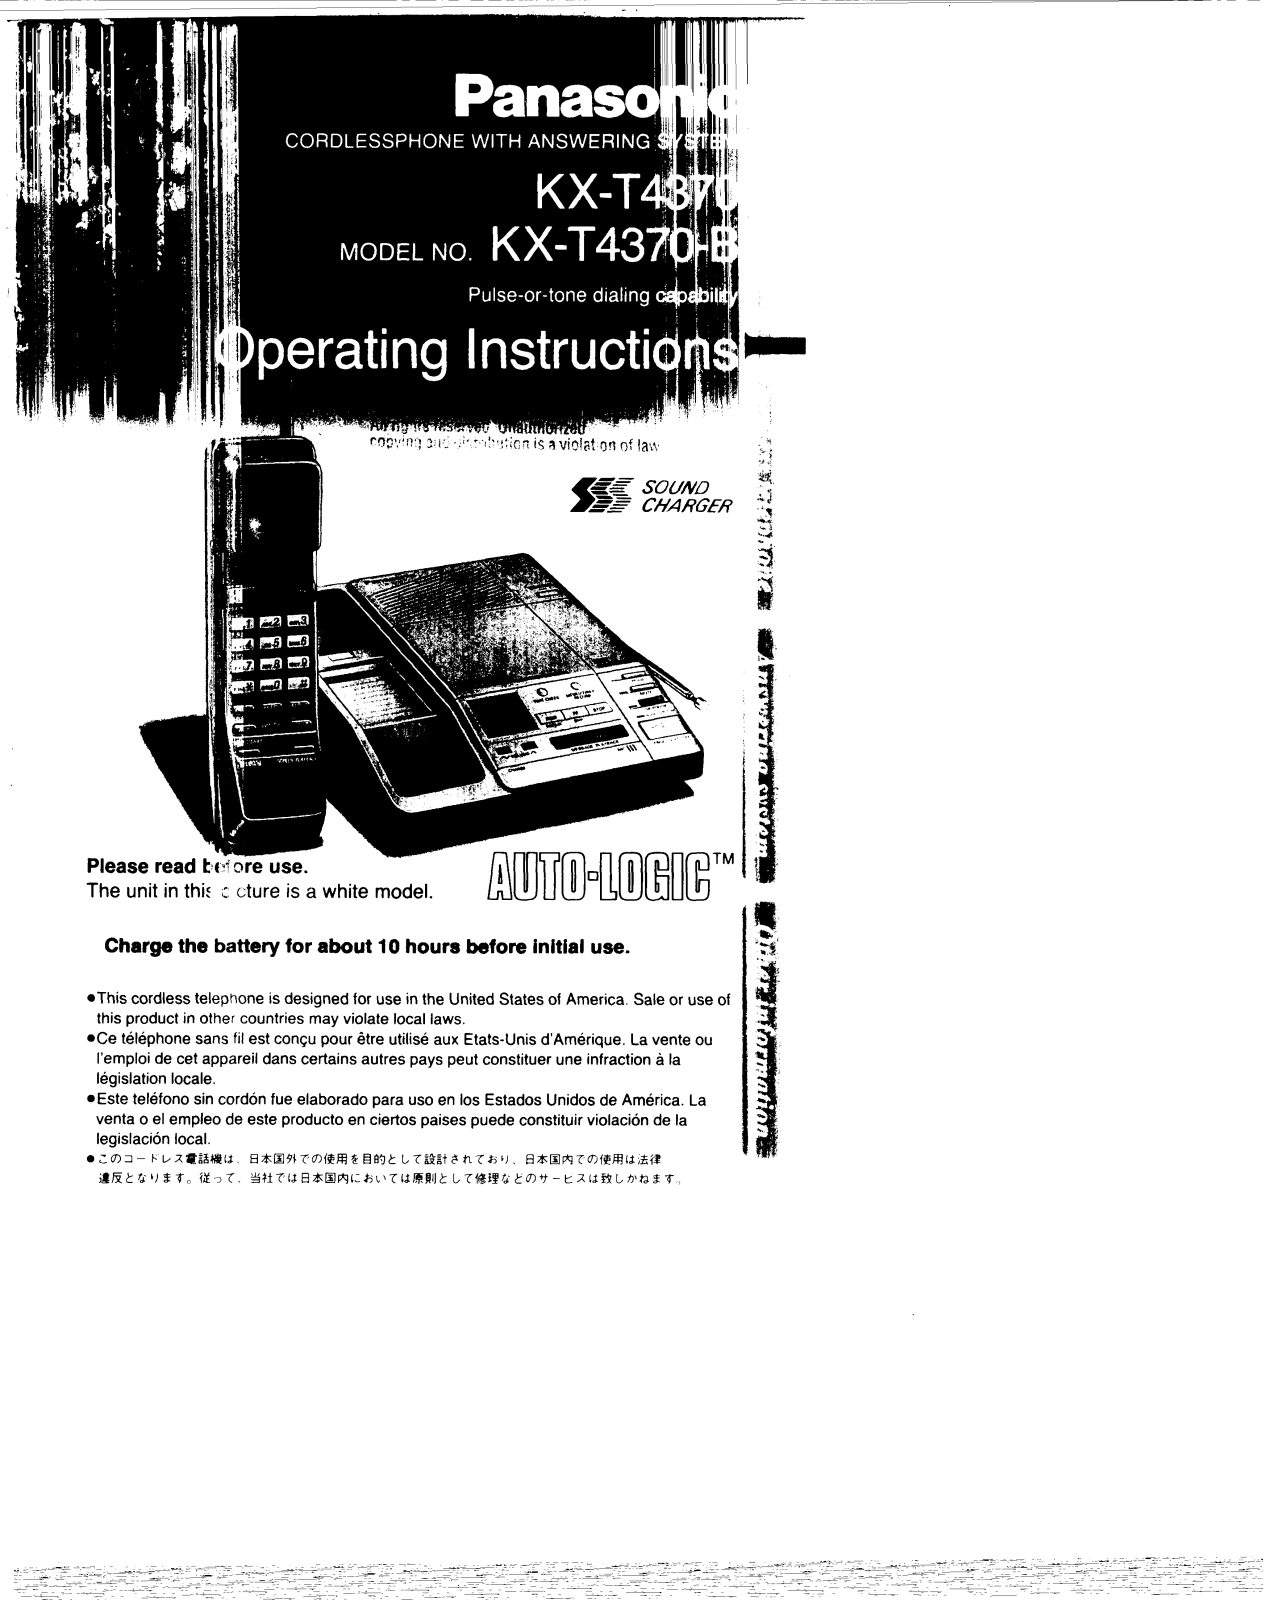 Panasonic kx-t4370 Operation Manual